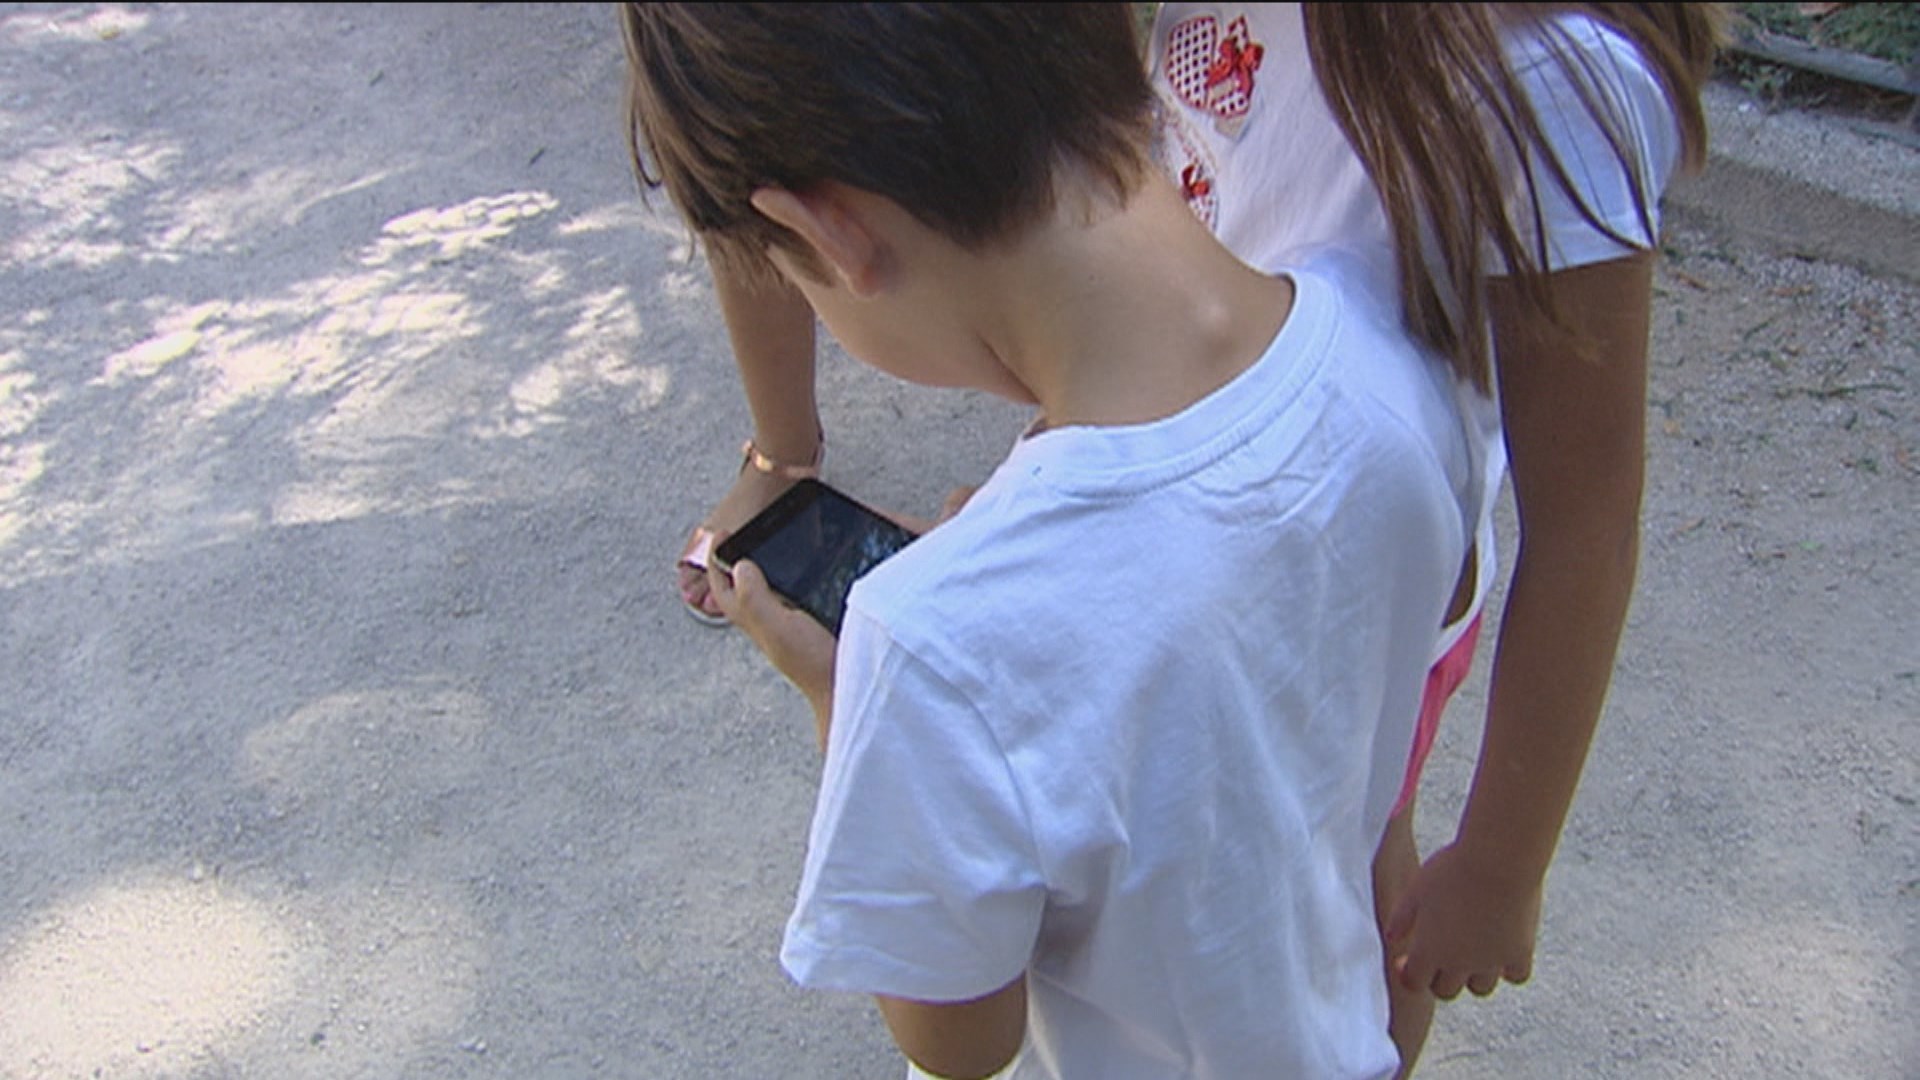 El 70% de los niños de España ya tiene móvil a los 12 años: la pandemia  avanza el primer 'smartphone' - El Periódico